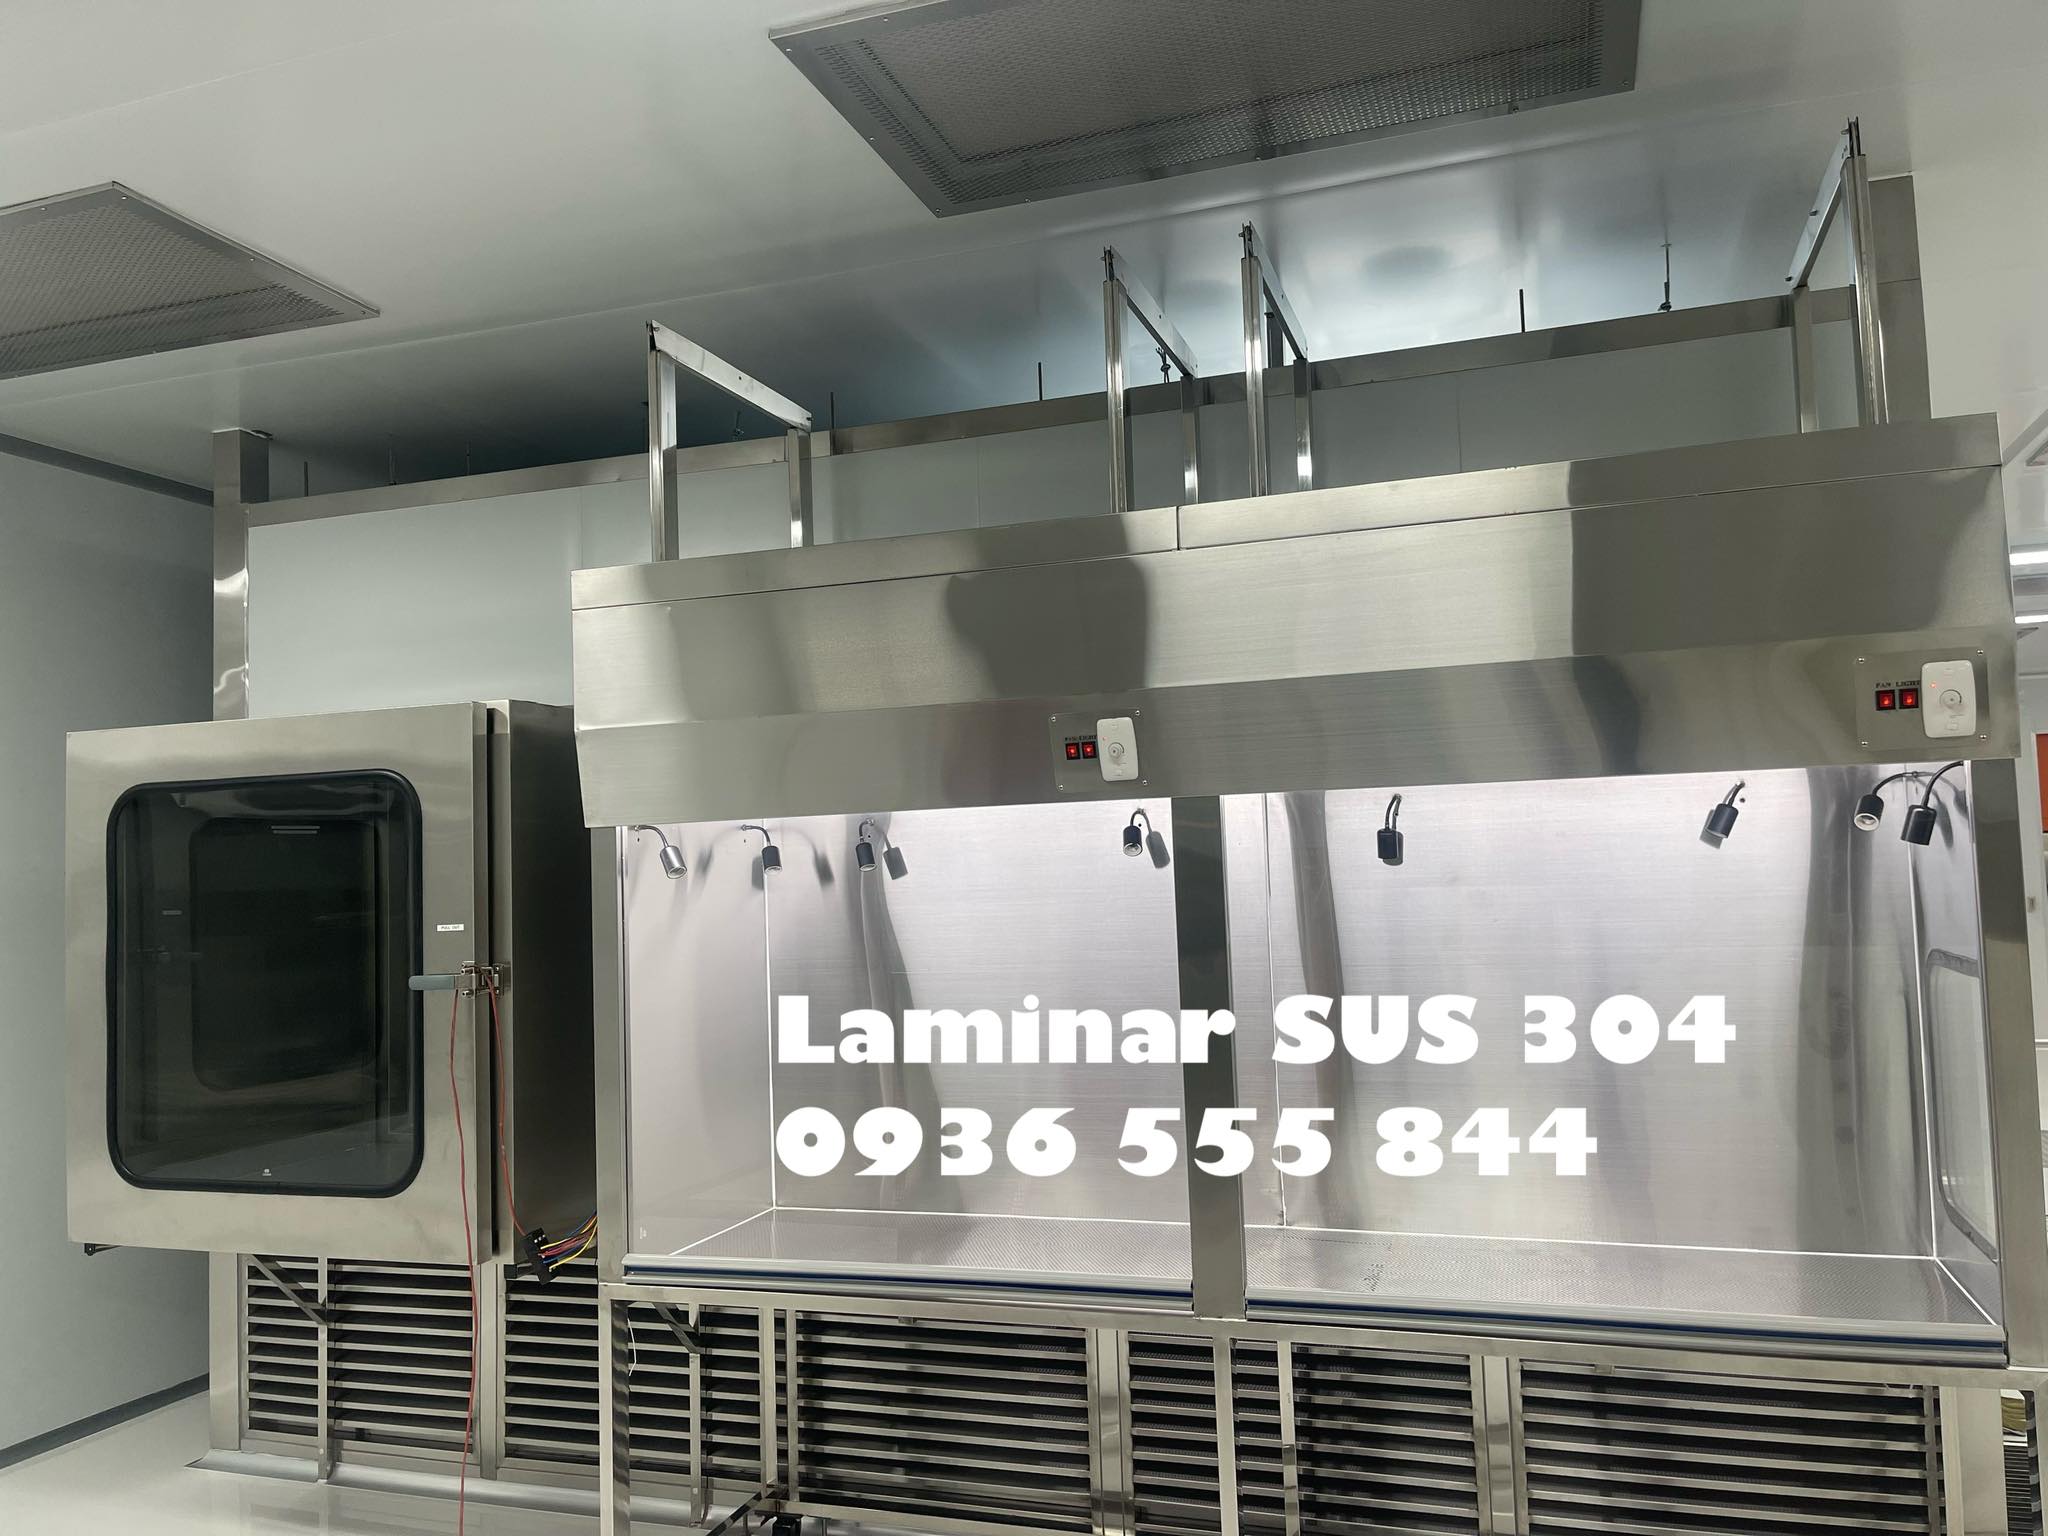 Chuyên sản xuất laminar flow cấp phòng sạch